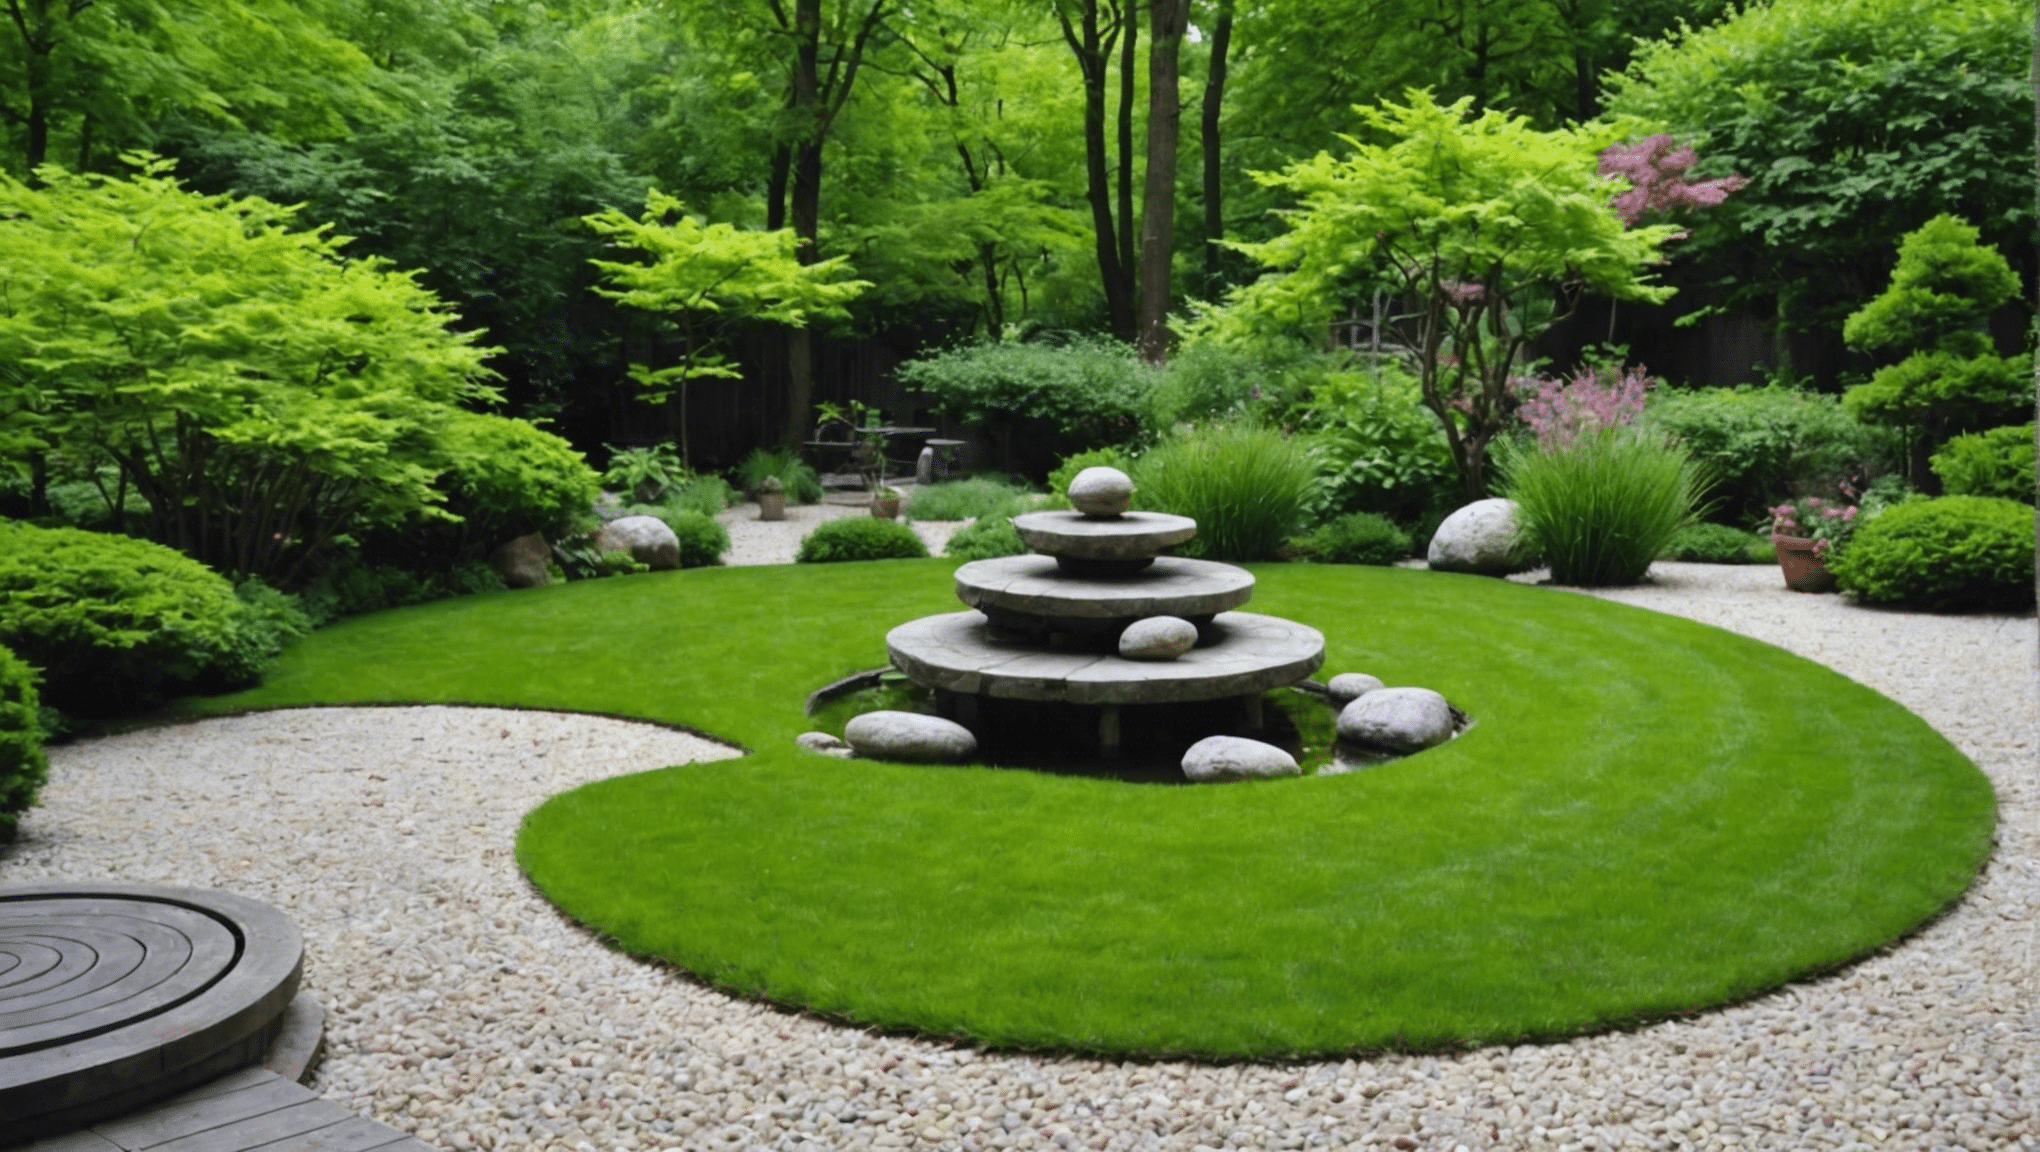 découvrez comment aménager un jardin zen chez soi et profiter d'un espace paisible dédié à la détente et à la sérénité. conseils, idées d'aménagement et plantes adaptées.